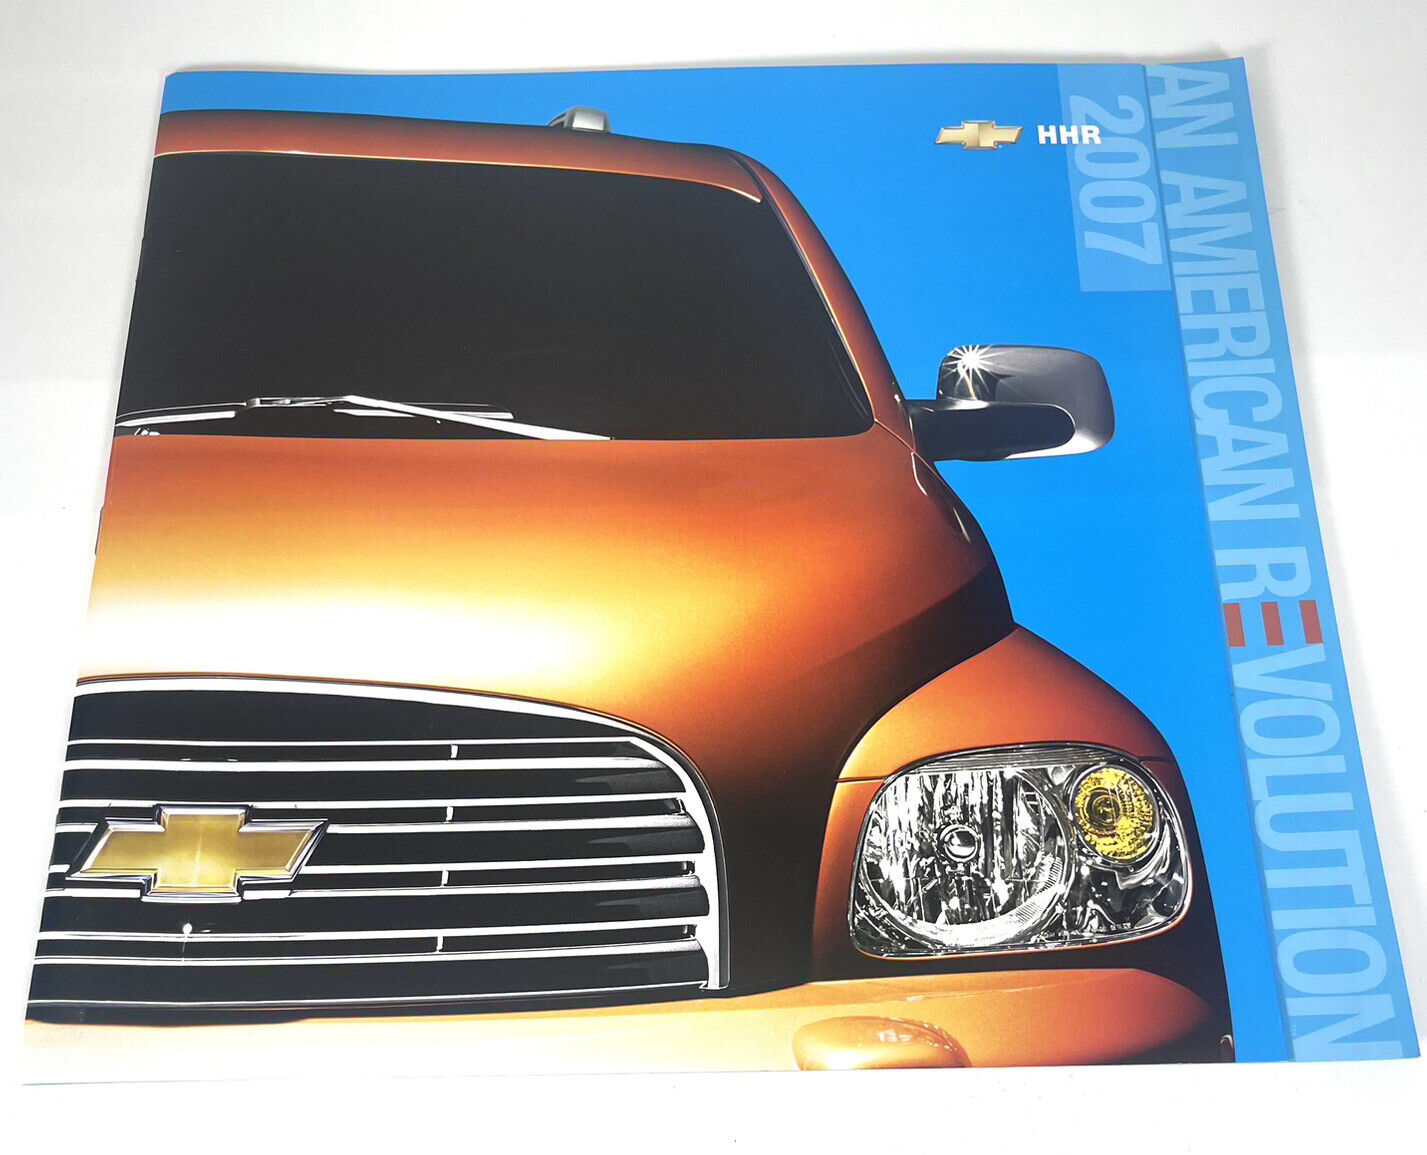 2007 Chevrolet HHR 24-page Original Car Sales Brochure Catalog - Chevy